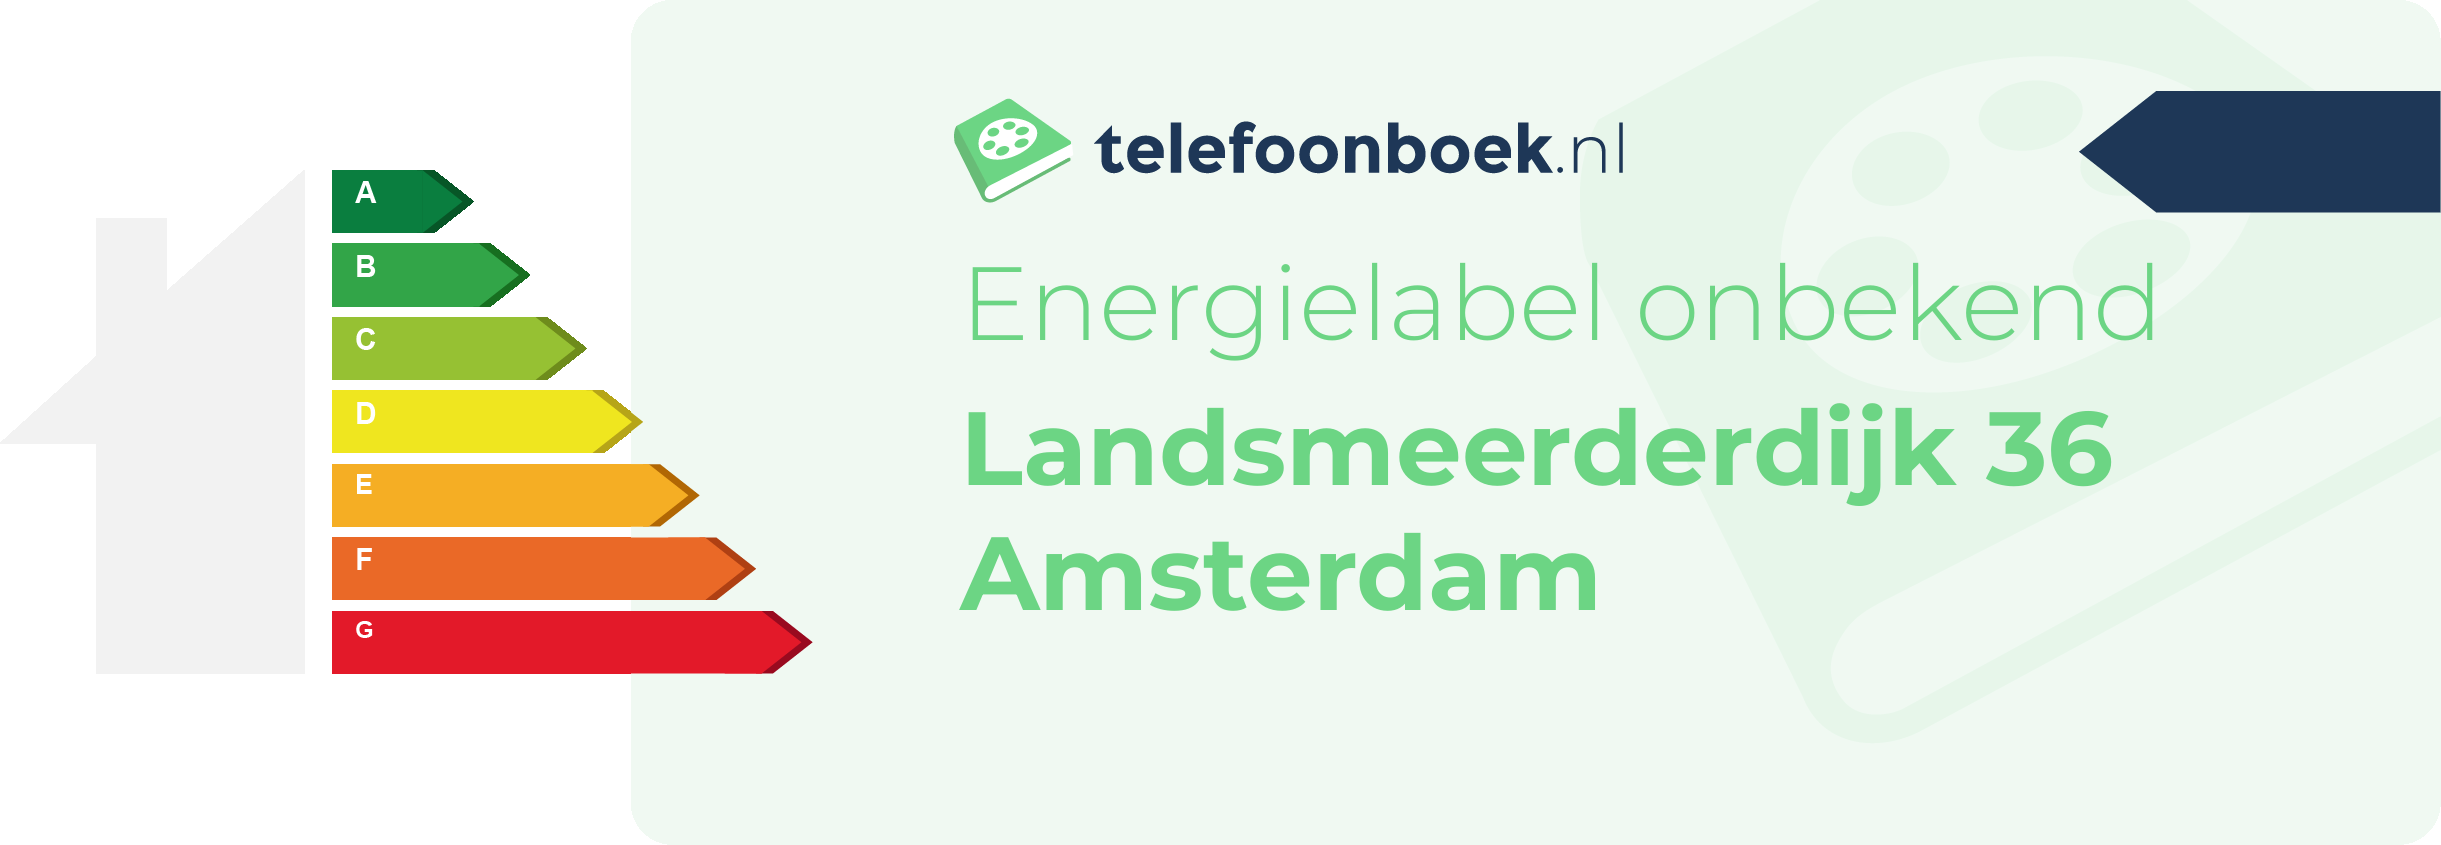 Energielabel Landsmeerderdijk 36 Amsterdam